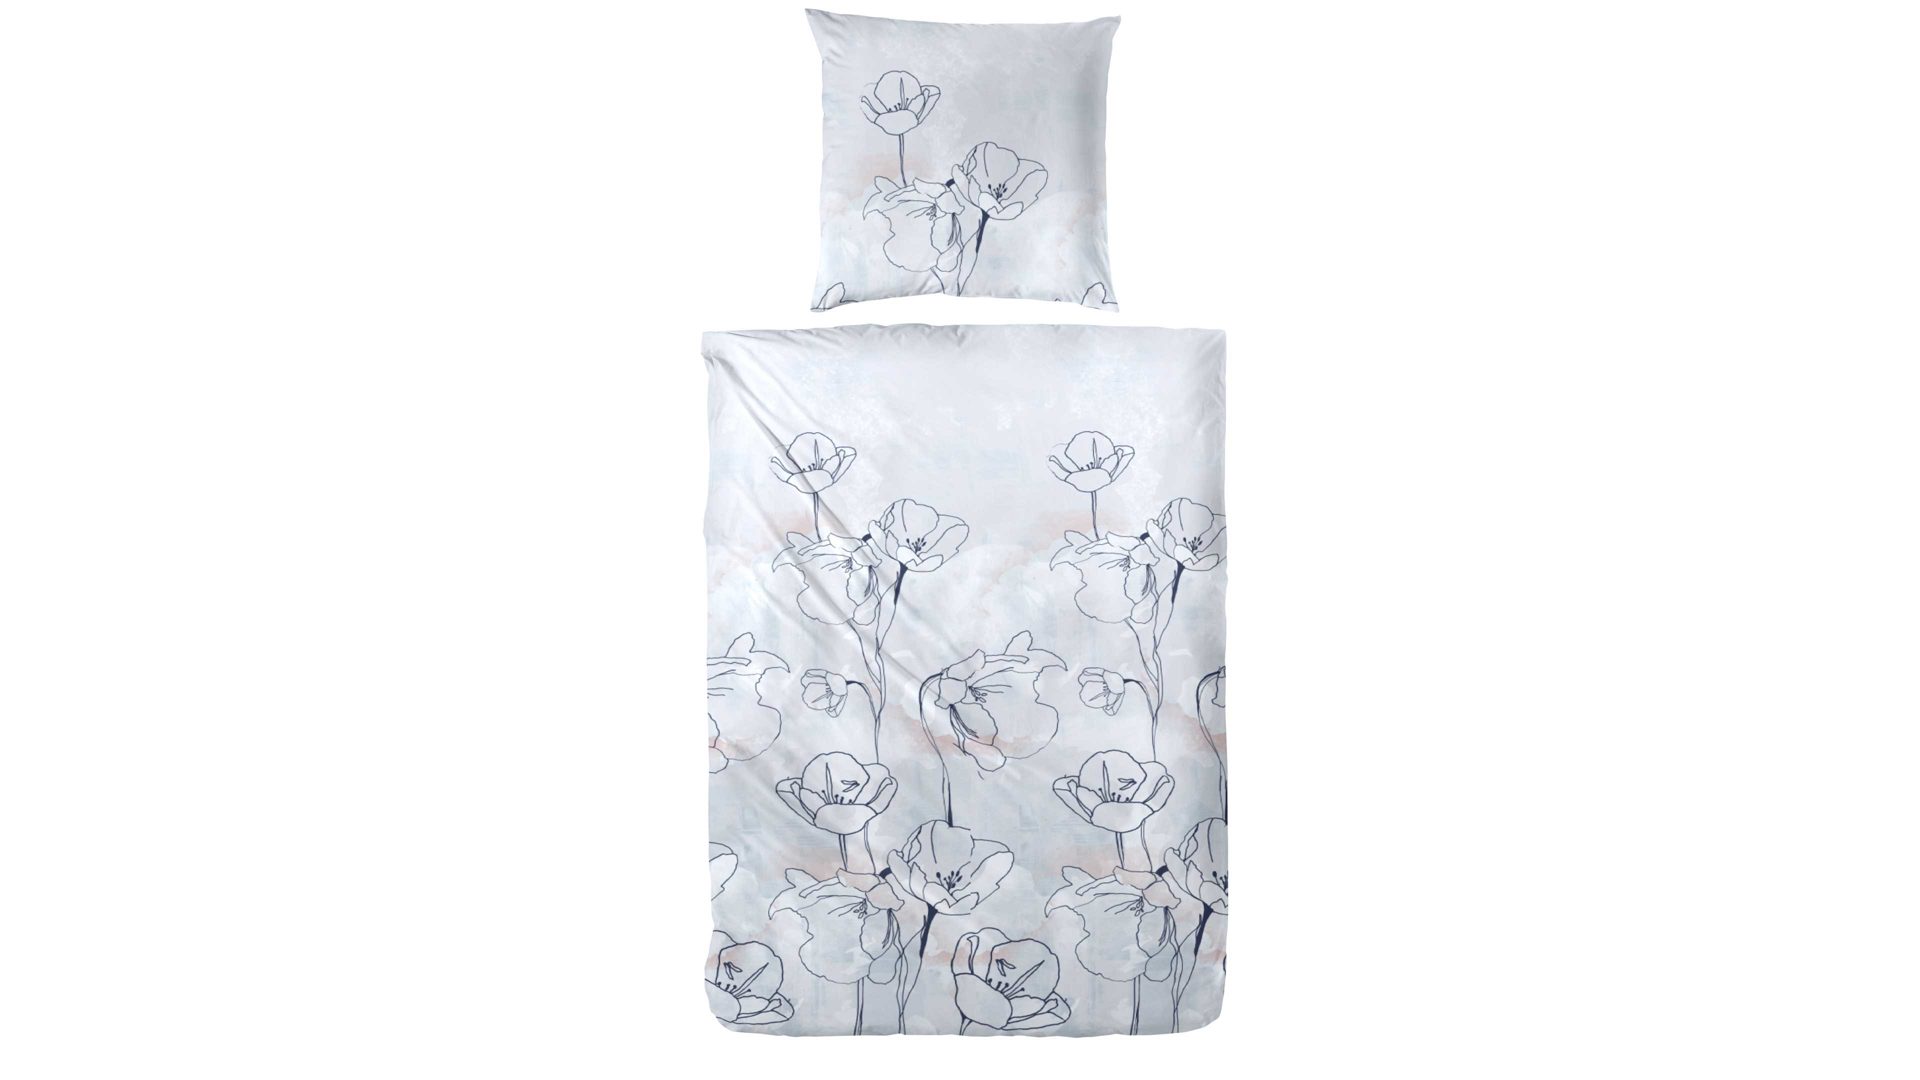 Bettwäsche-Set H.g. hahn haustextilien aus Stoff in Grau Bettwäsche-Set zweiteilig, ca. 135 x 200 cm - graublaues Blumenmuster